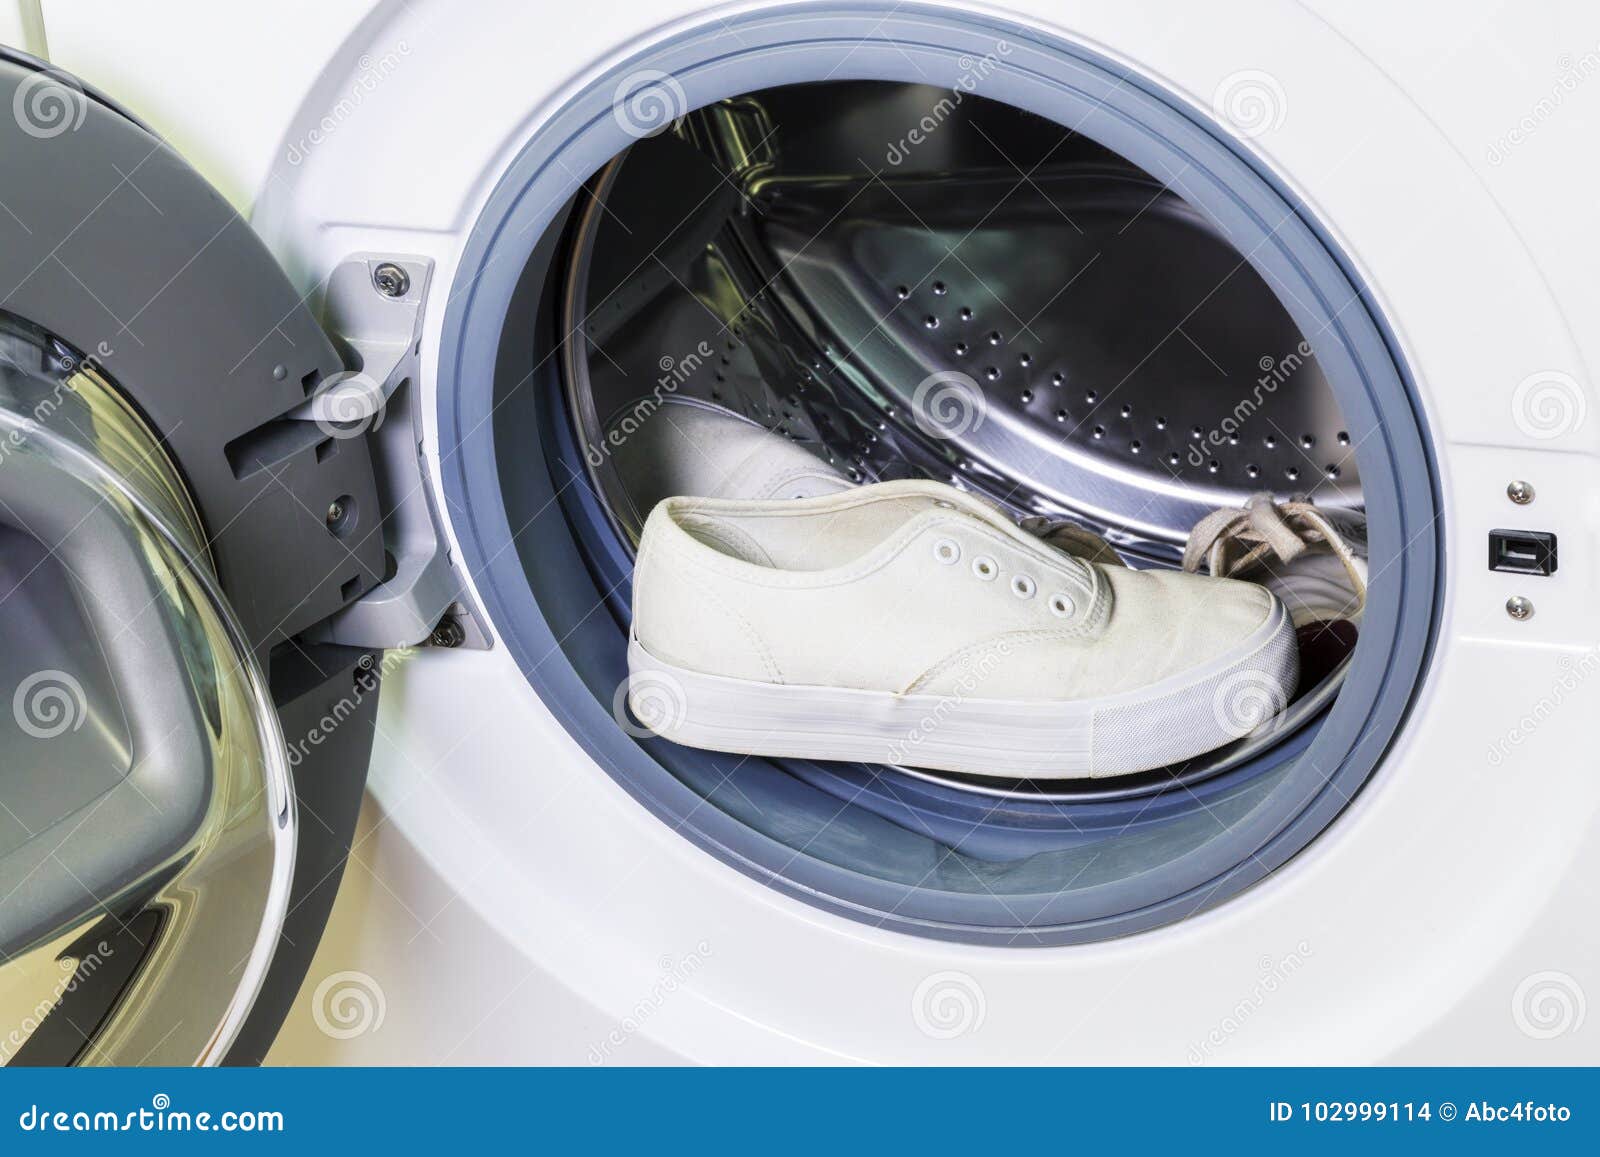 Отжим кроссовок в стиральной. Кроссовки в стиральной машине. Кеды в стиральной машине. Стирка кроссовок в стиральной машинке. Стирка белых кроссовок в машинке.